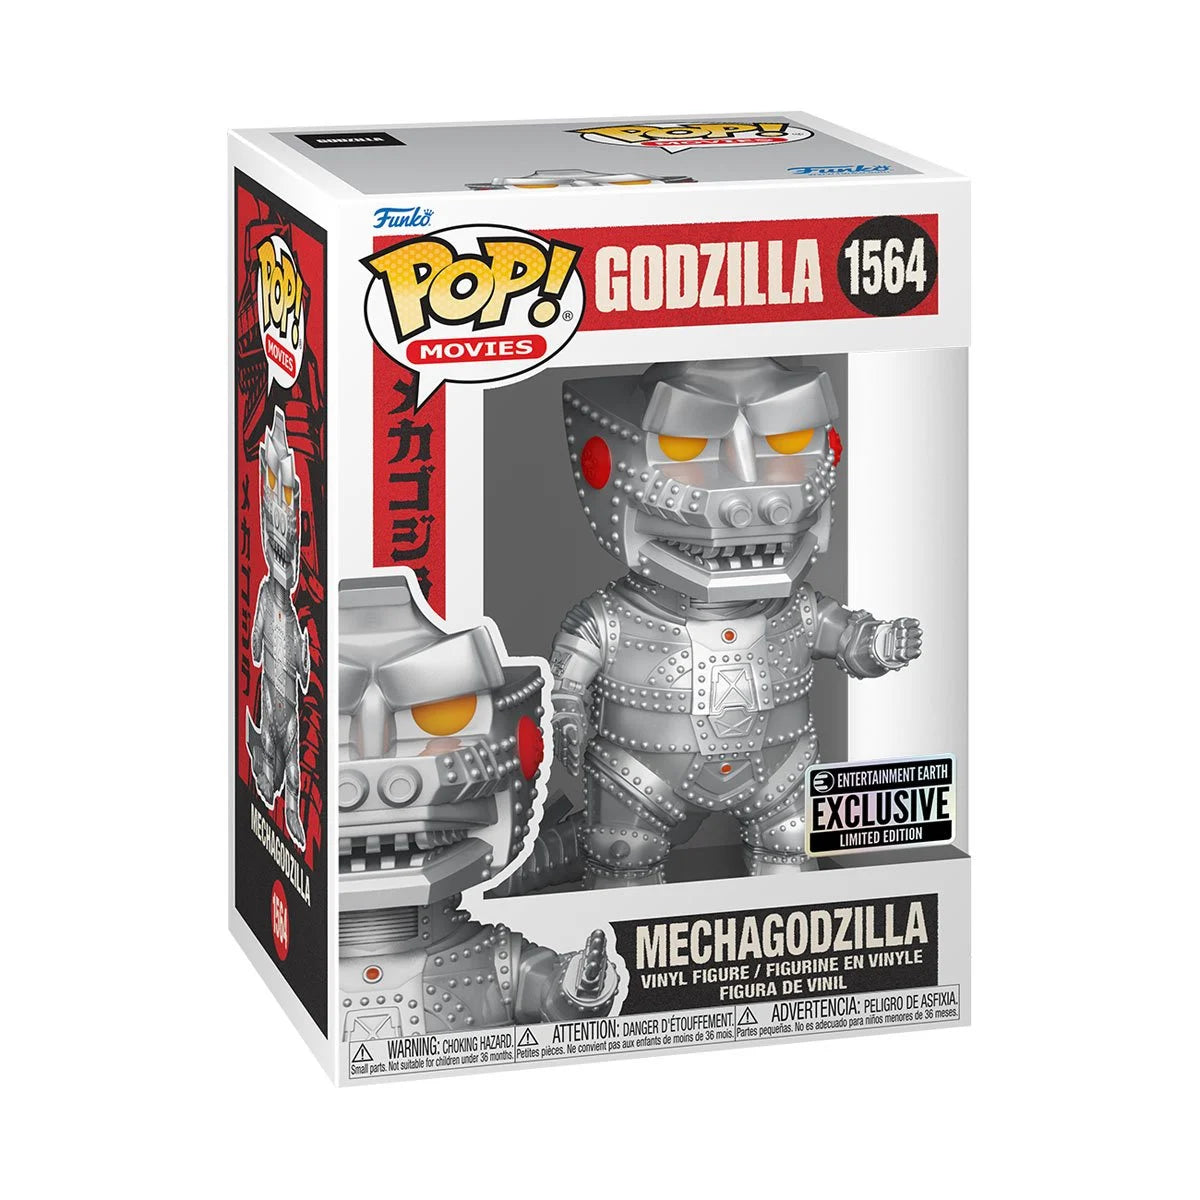 Funko Pop! Godzilla - Mechagodzilla